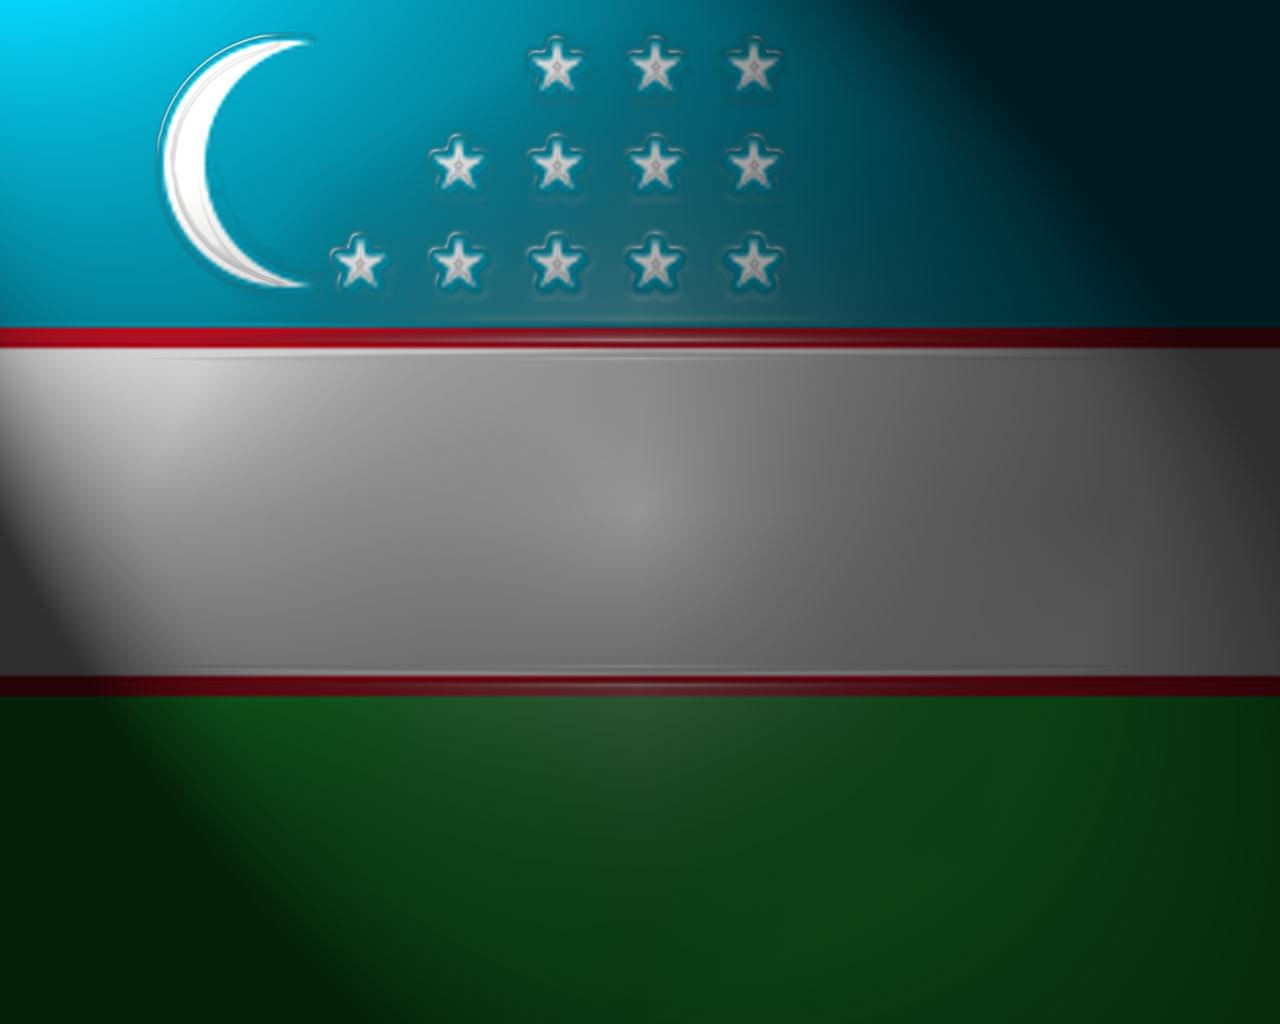 Bayroq rasmi. Флаг Республики Узбекистан. Узбекистан флаг СВГ. Герб и флаг Узбекистана. Герб БАЙРОК Узбекистан.